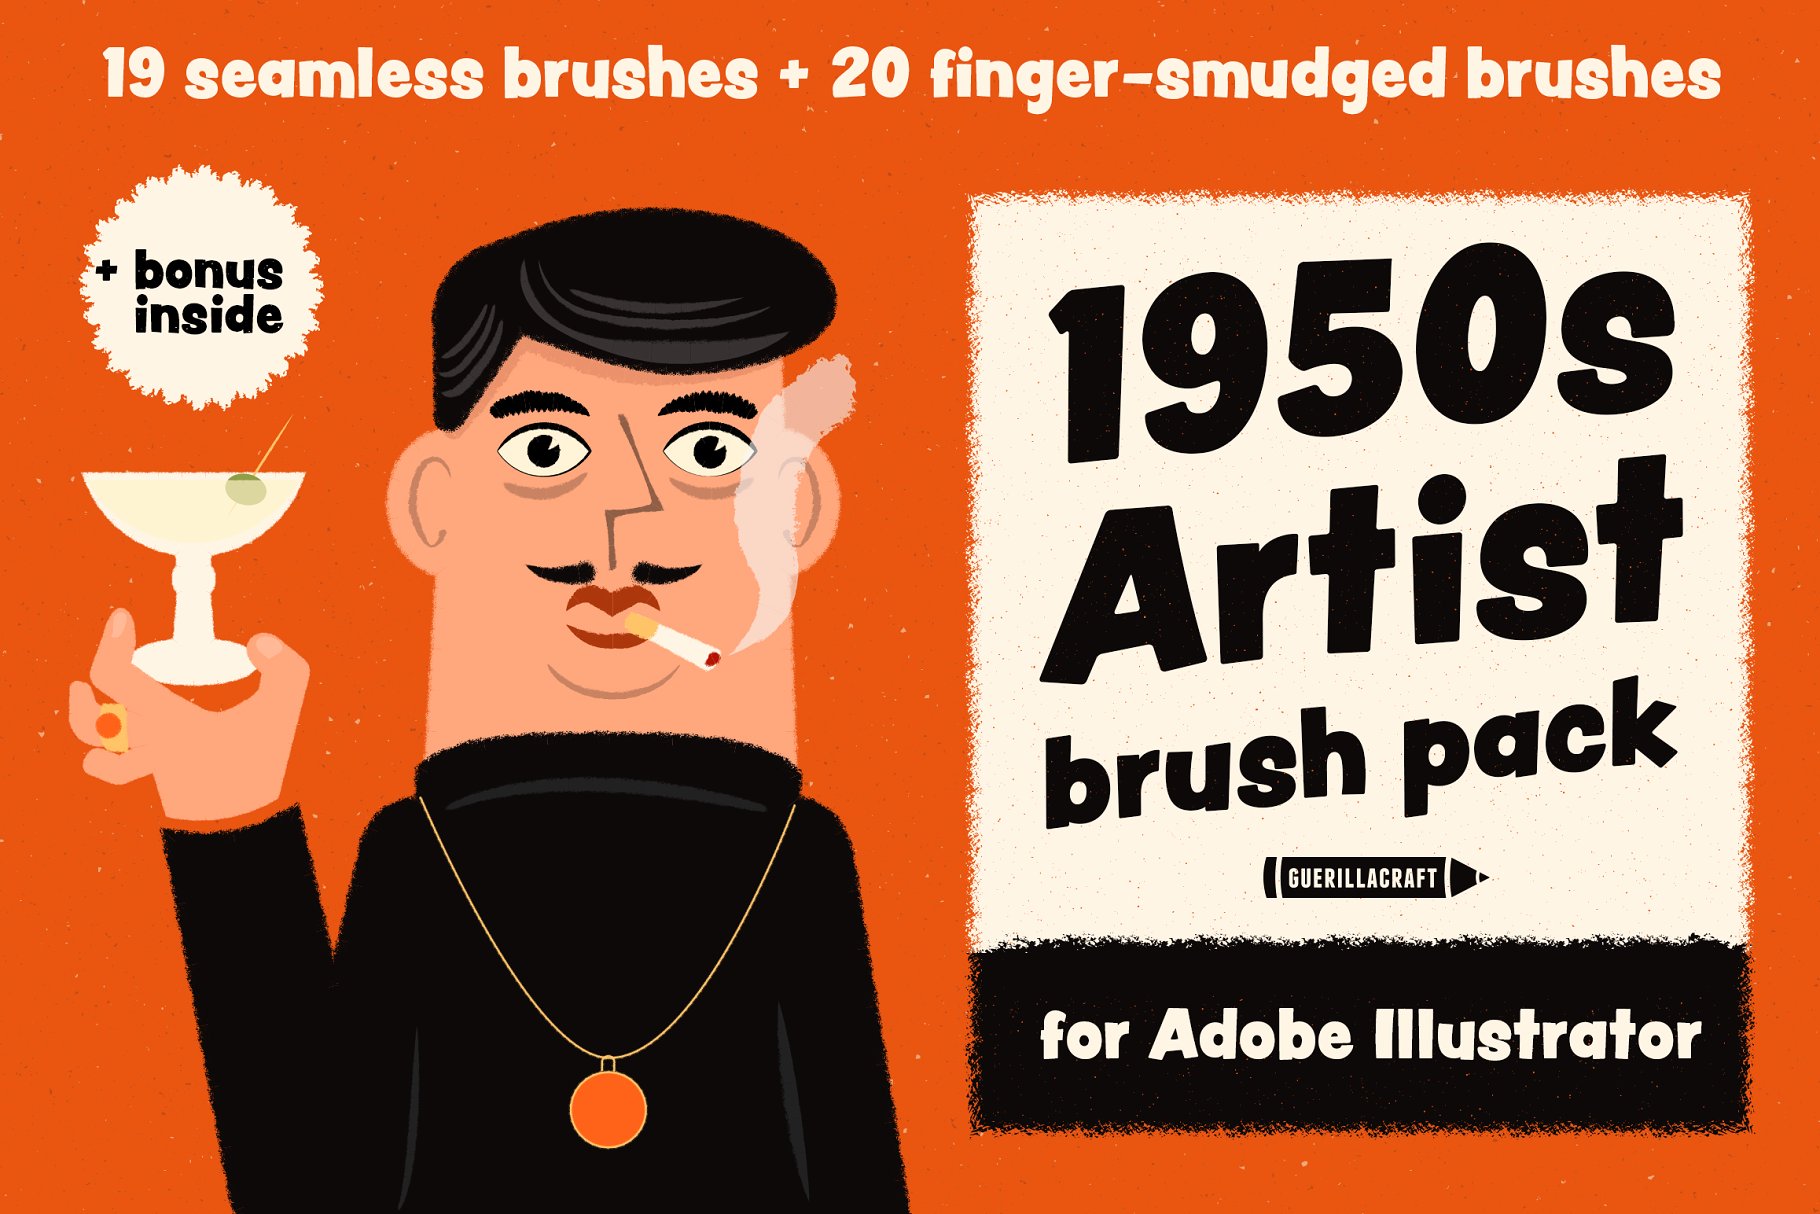 复刻1950s年代设计风格笔刷套装 1950s Artist Brush Pack插图